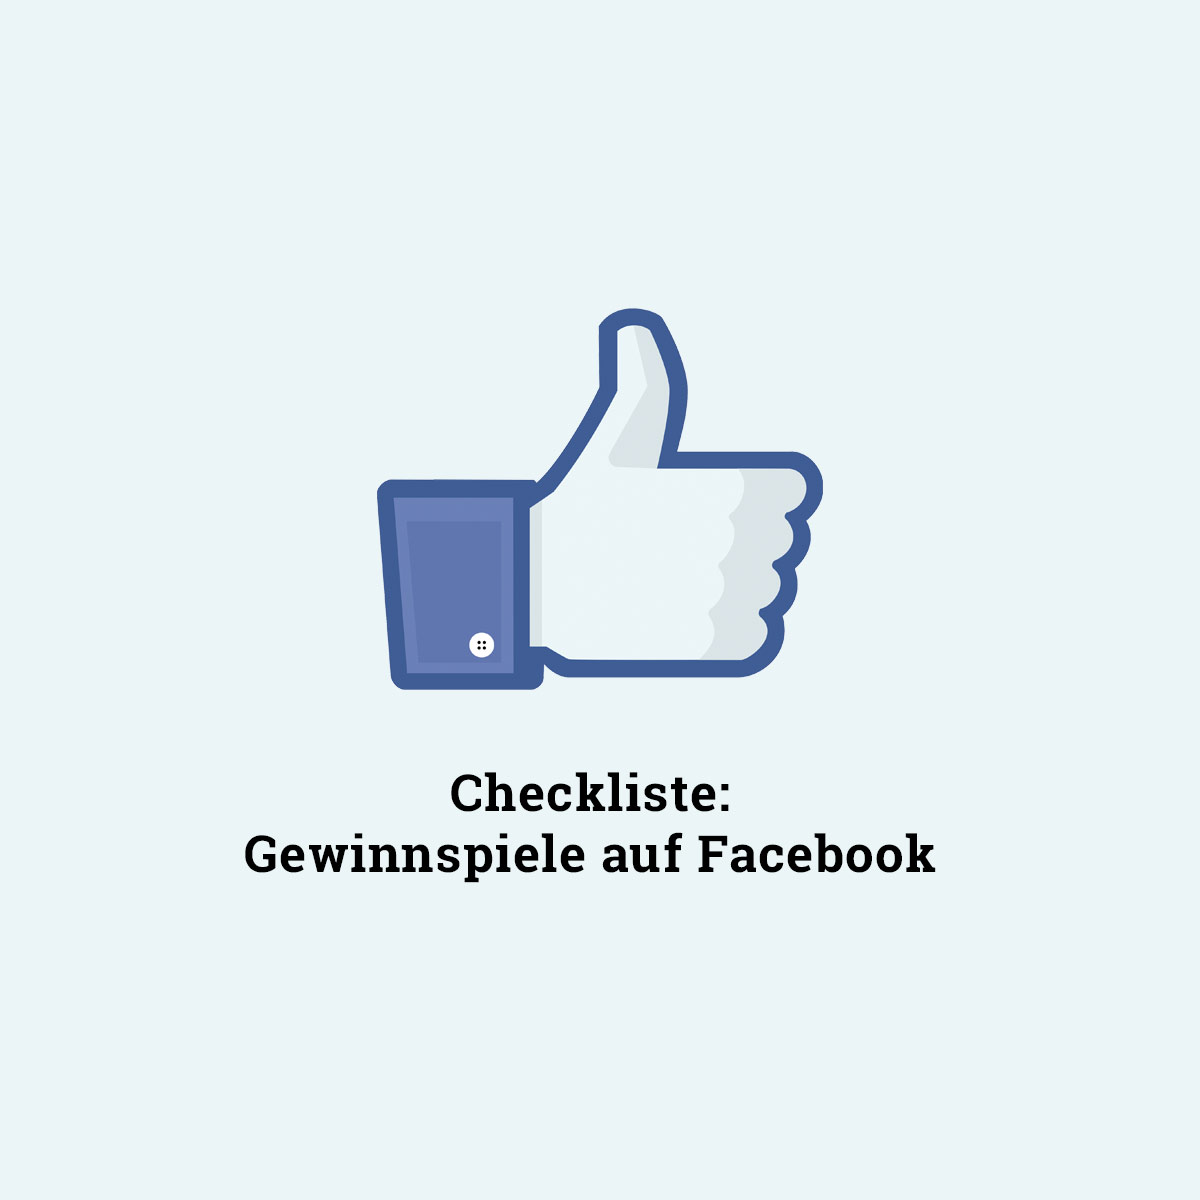 Checkliste Das Gilt Es Bei Einem Facebook Gewinnspiel Zu Beachten Allfacebook De